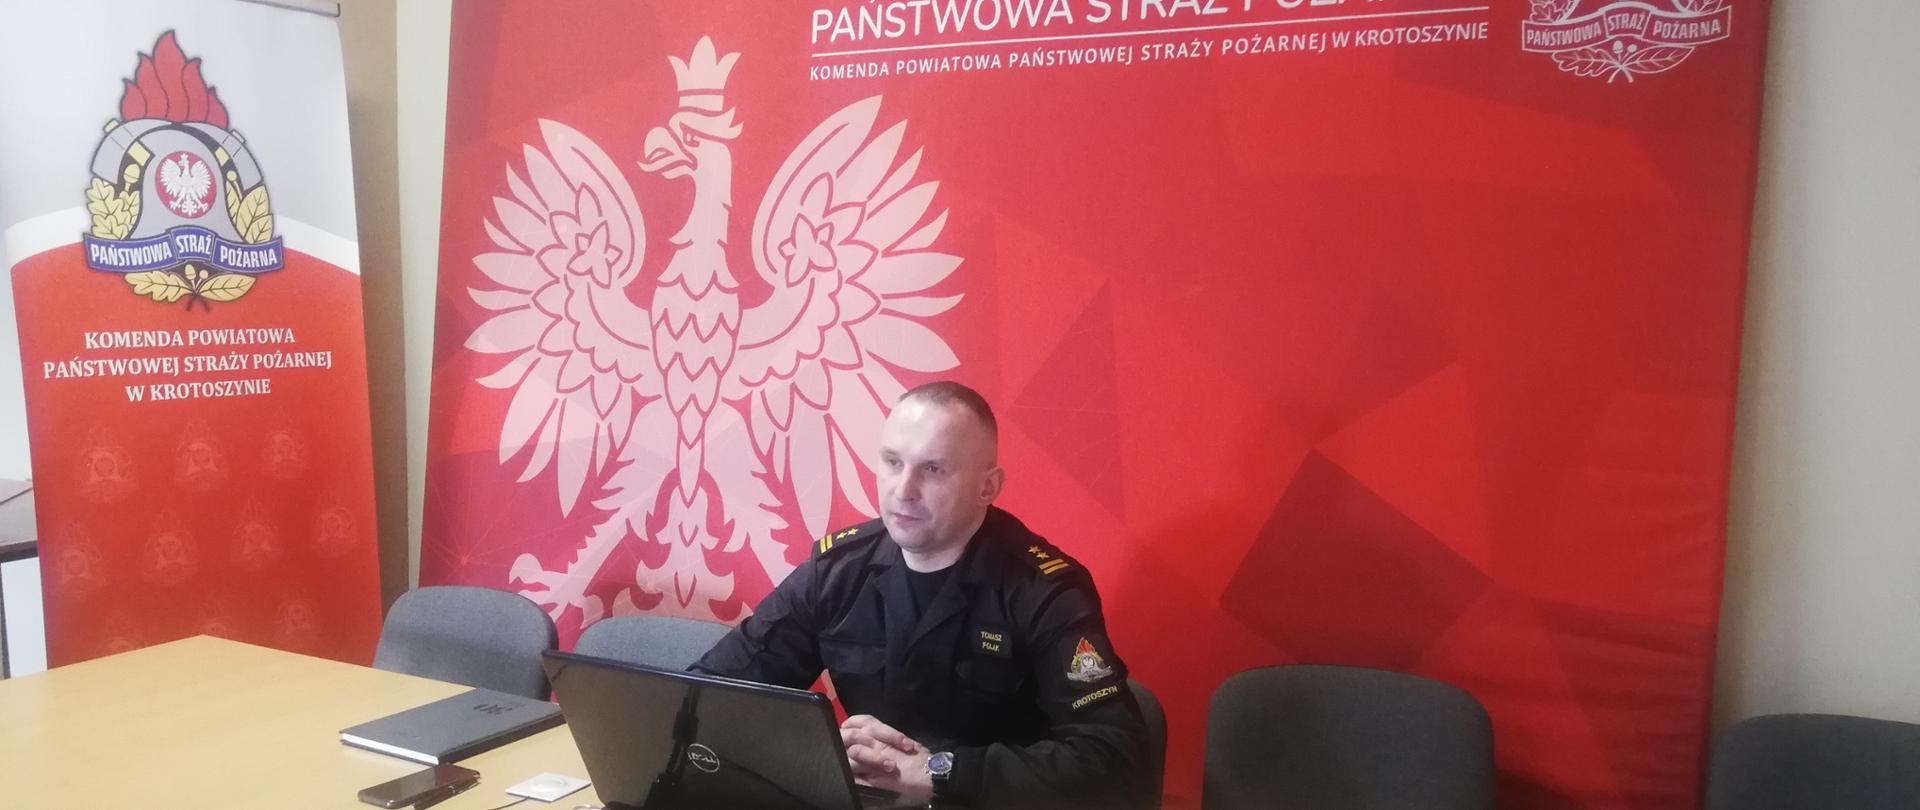 Zdjęcie przedstawia komendanta powiatowego PSP w Krotoszynie, który siedzi przy stole z laptopem i przedstawia materiał z działalności JOP za rok 2021